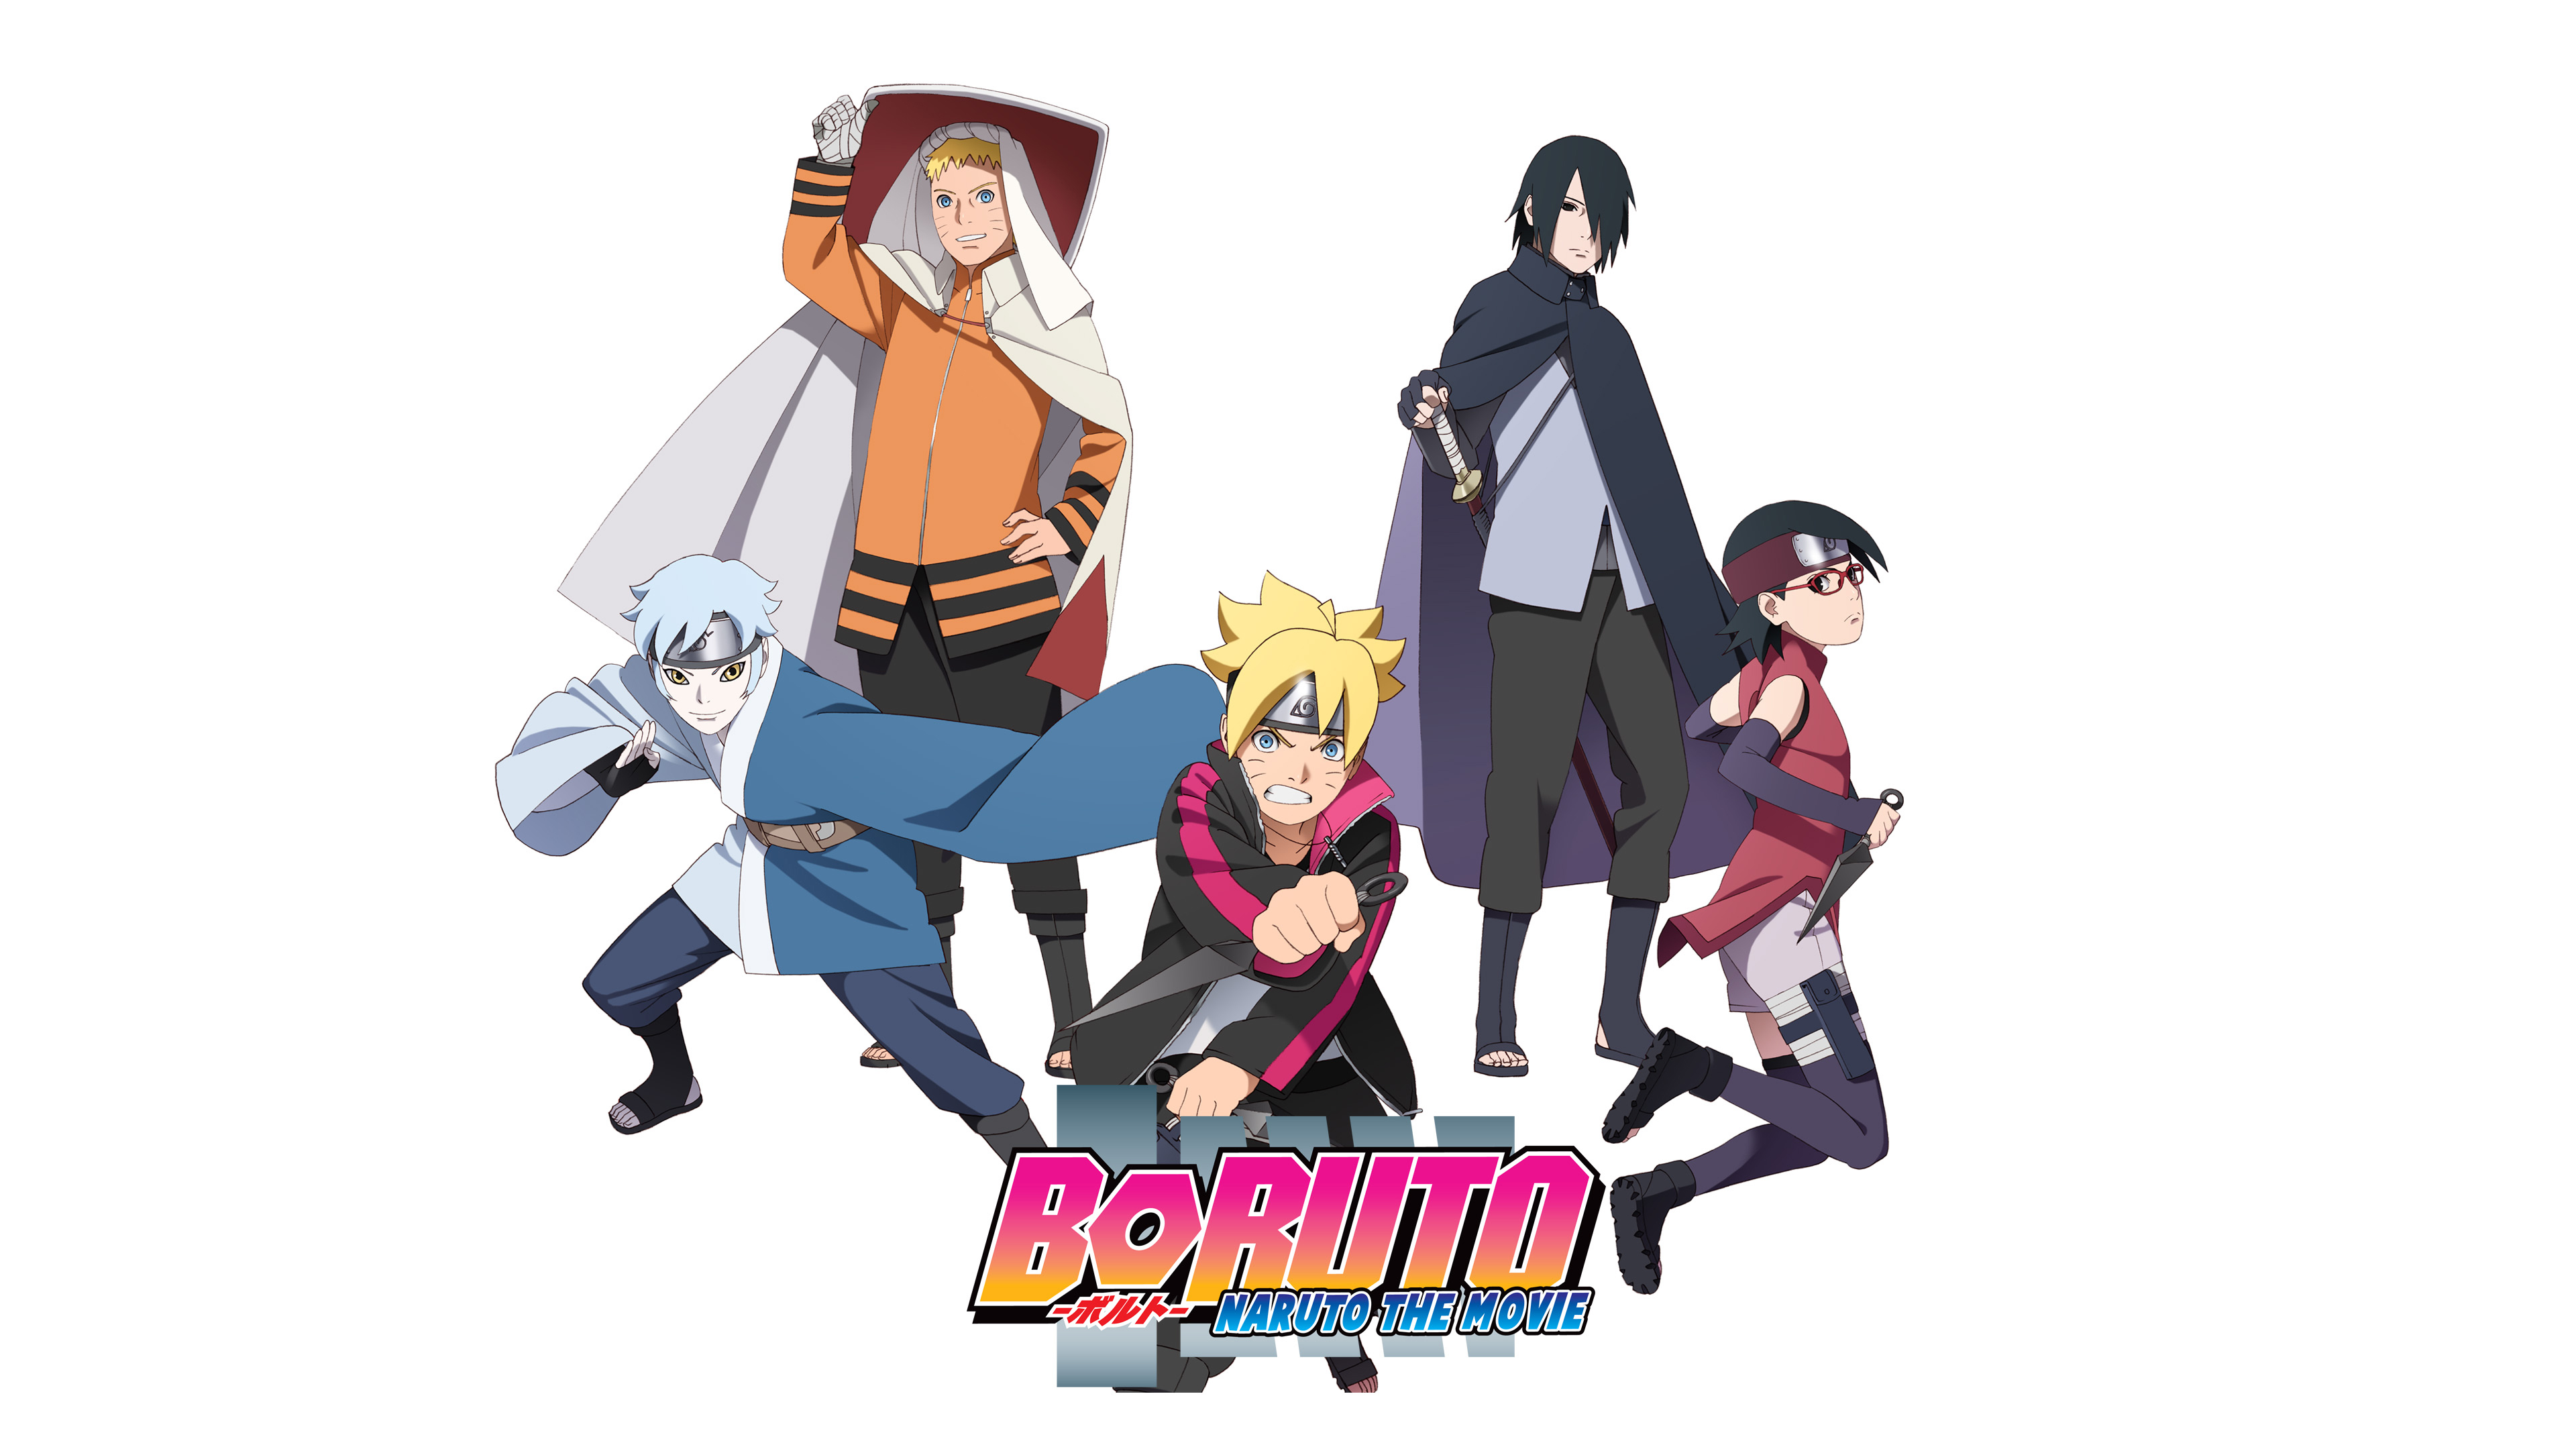 Boruto: Naruto the Movie 